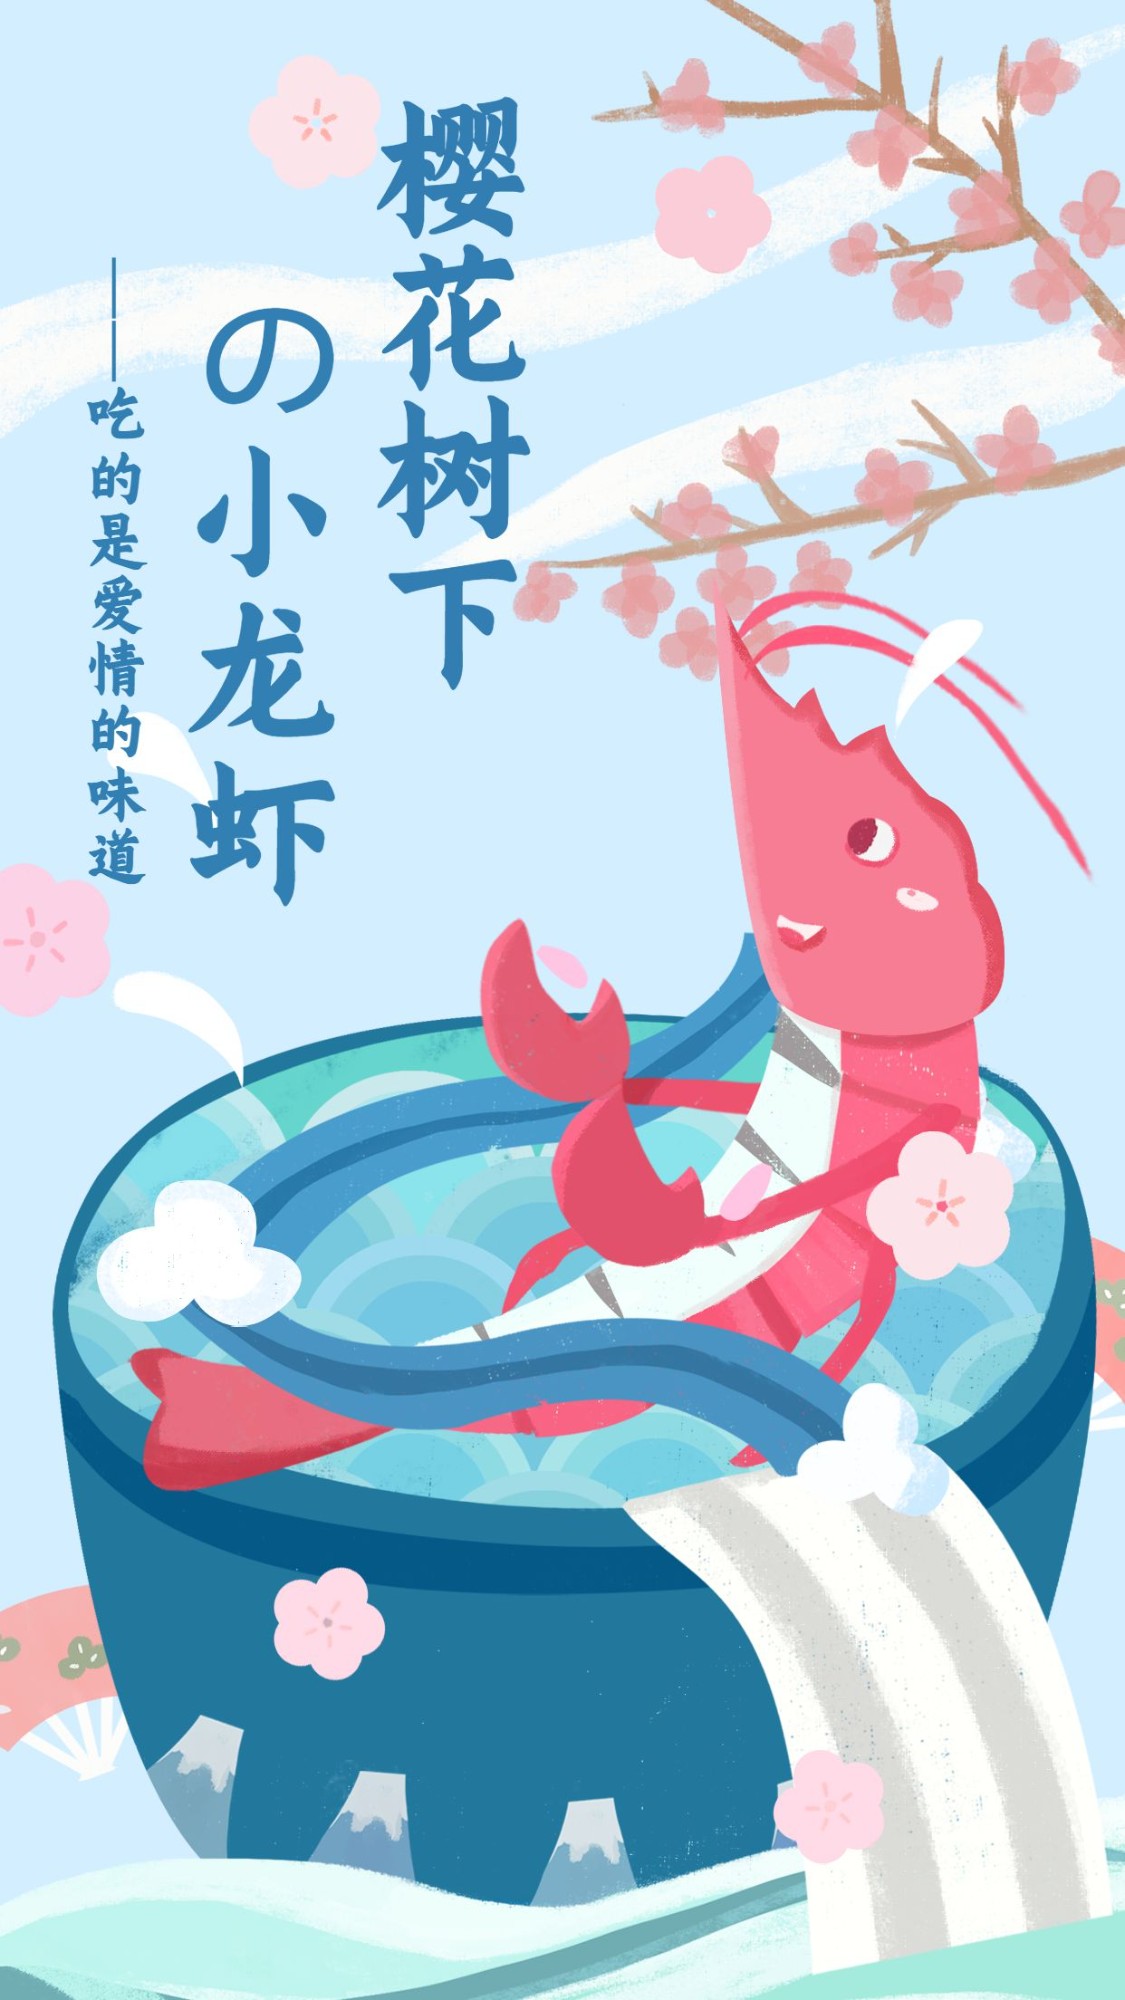 小龙虾美食清新手绘卡通手机海报预览效果